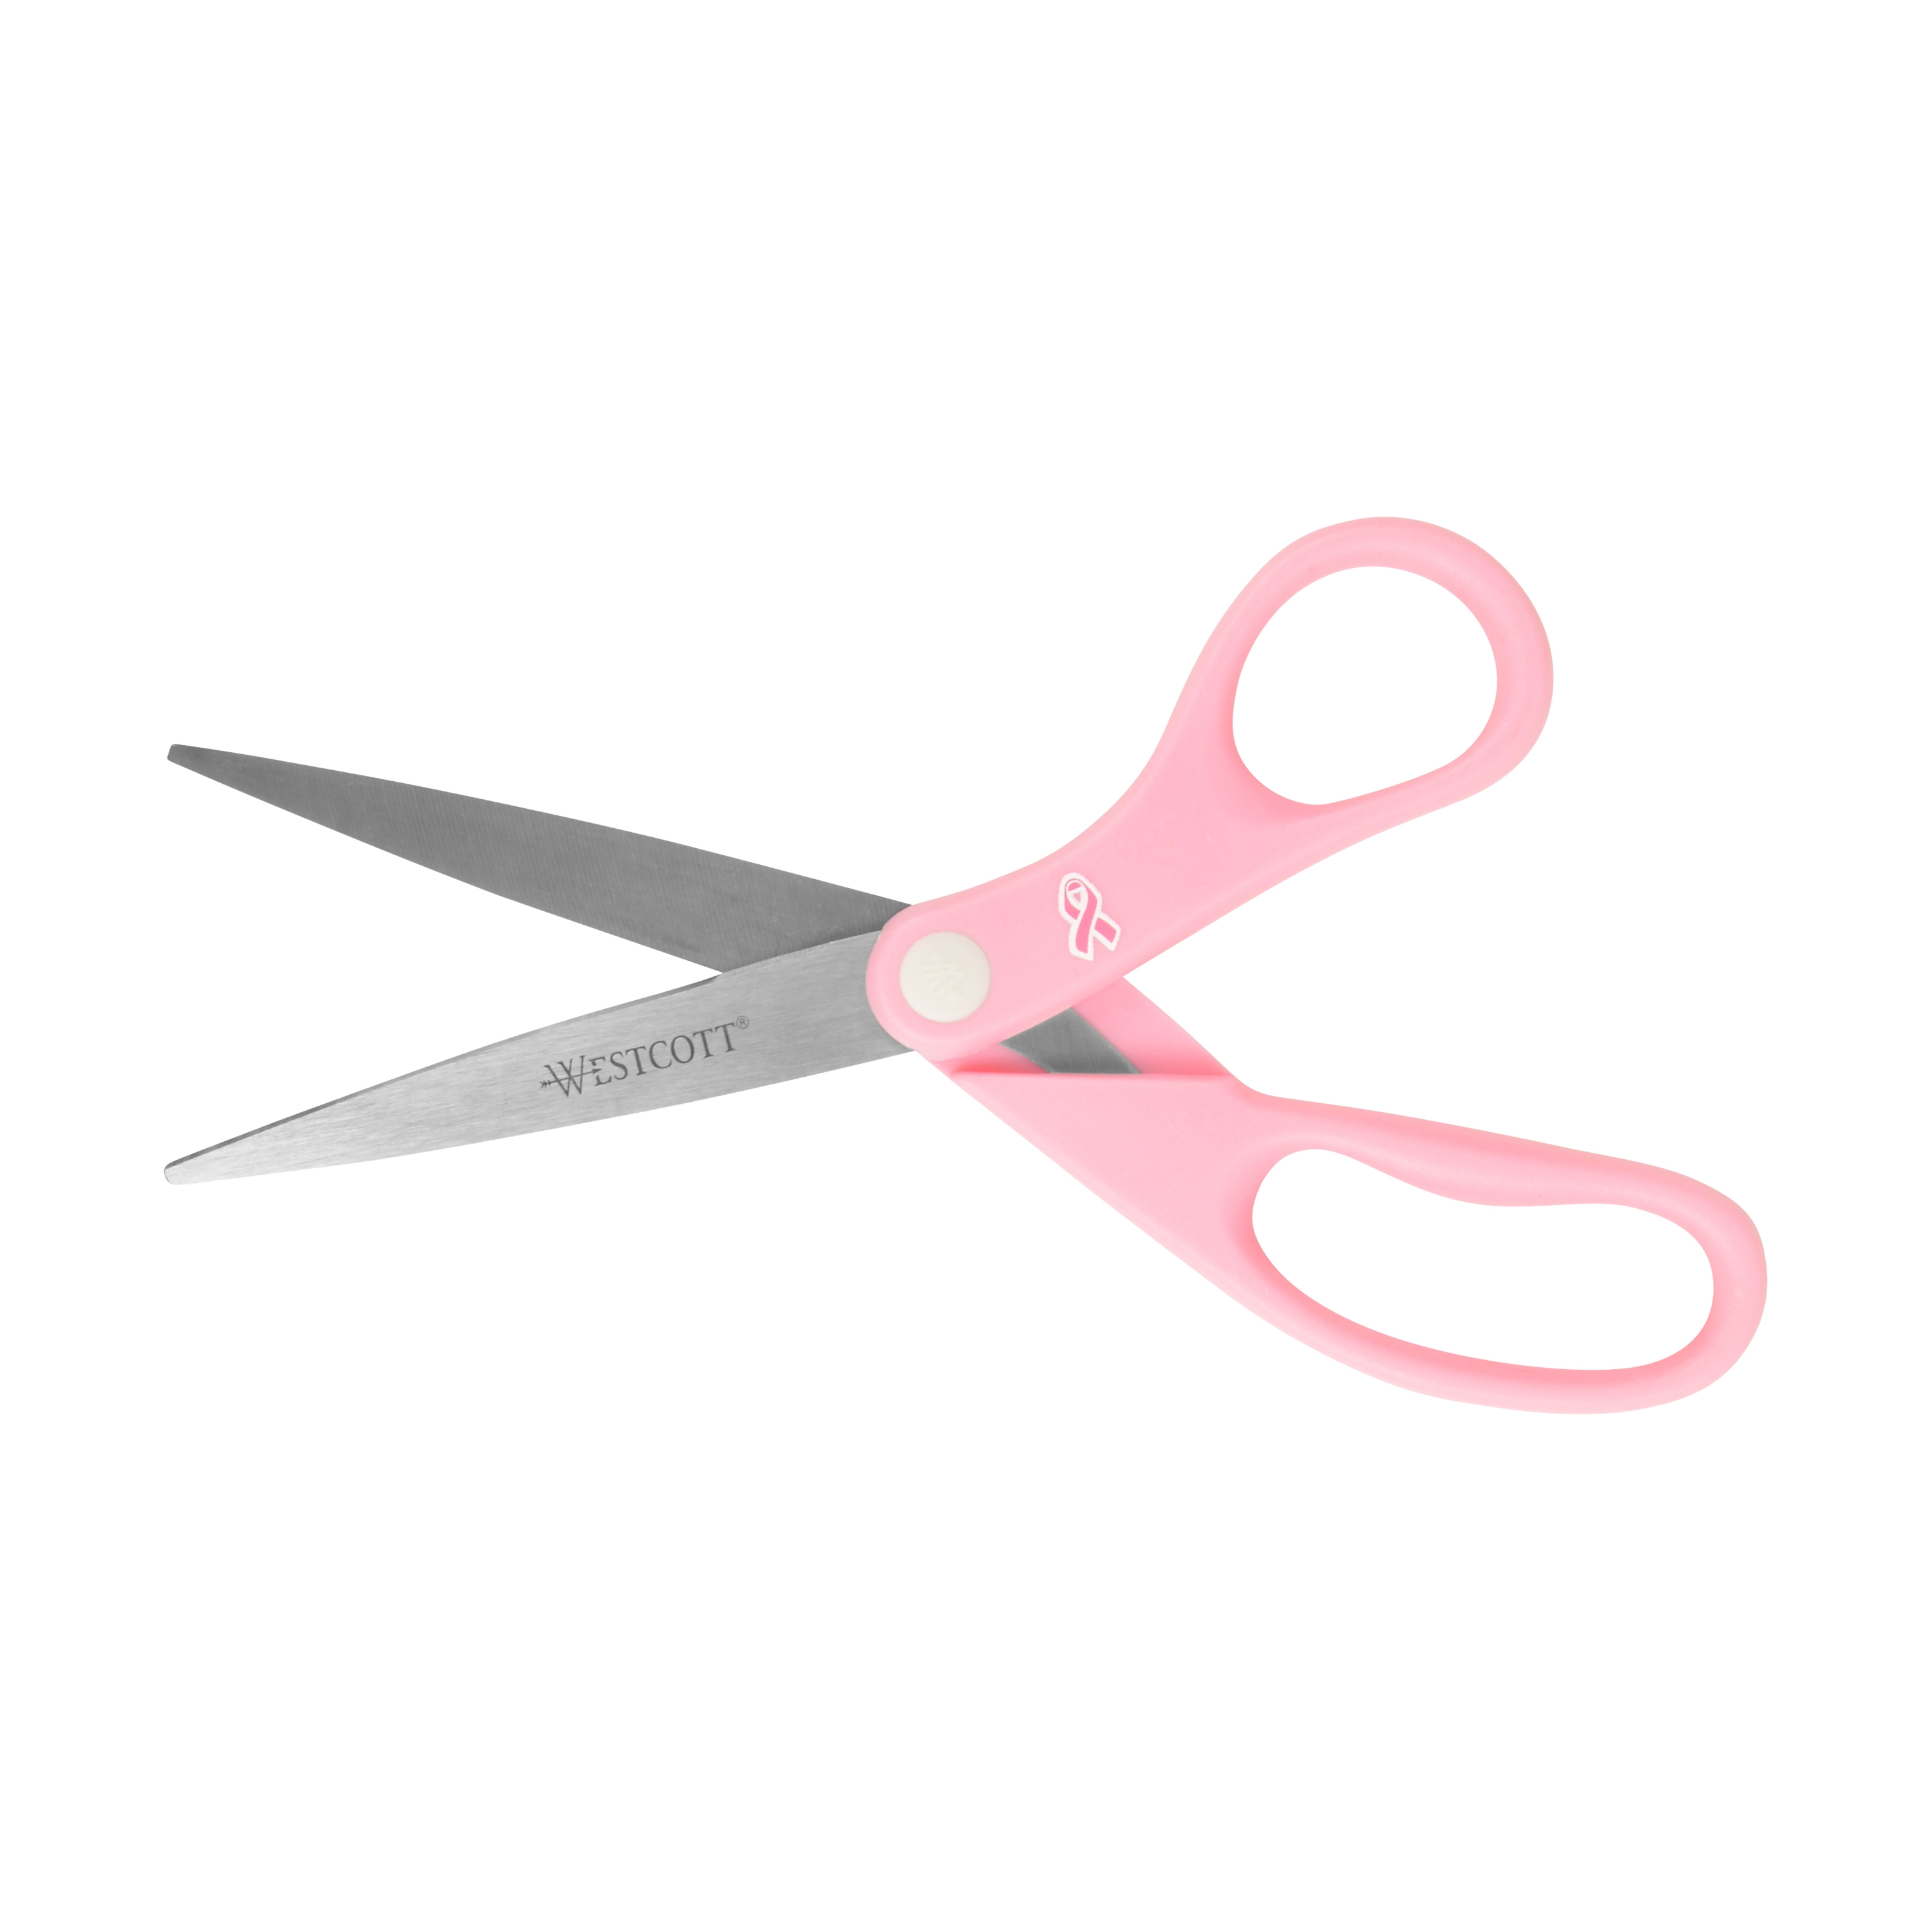 Westcott 8" Pink Ribbon Stainless Steel Scissors (15387)